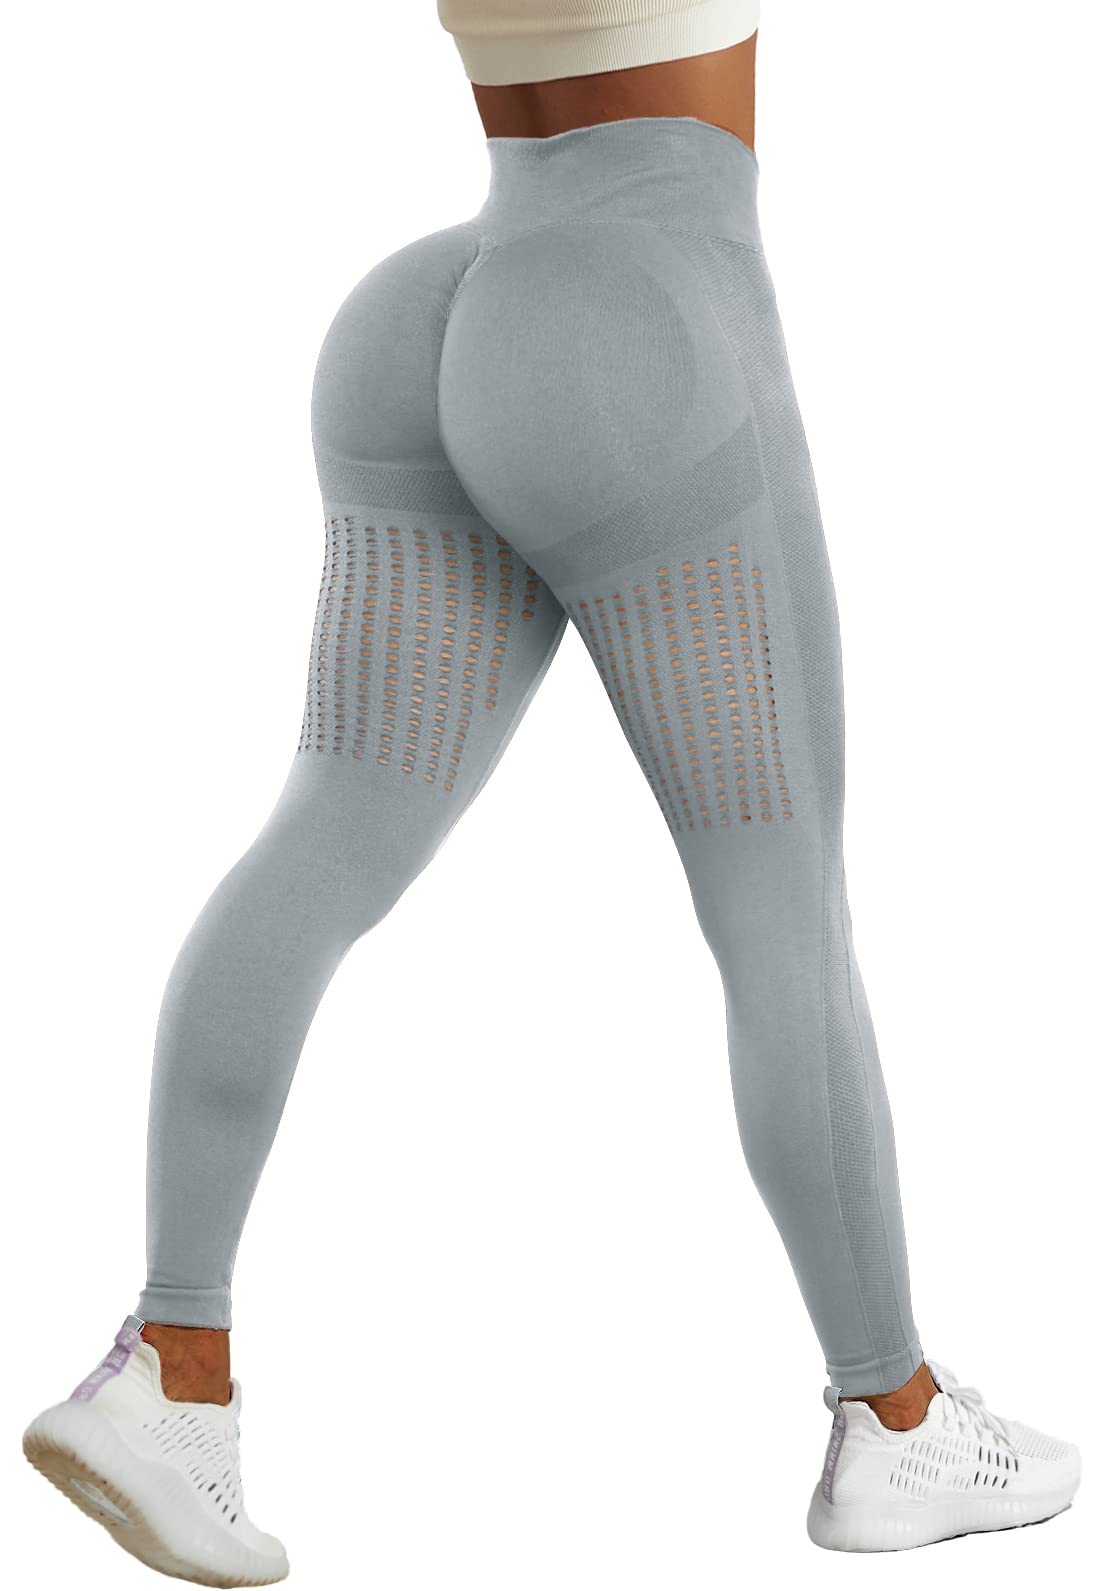 CFR High Waist Butt Scrunch Leggings Workout Seamless Leggings for Women  Sexy Cut Out Yoga Pants #